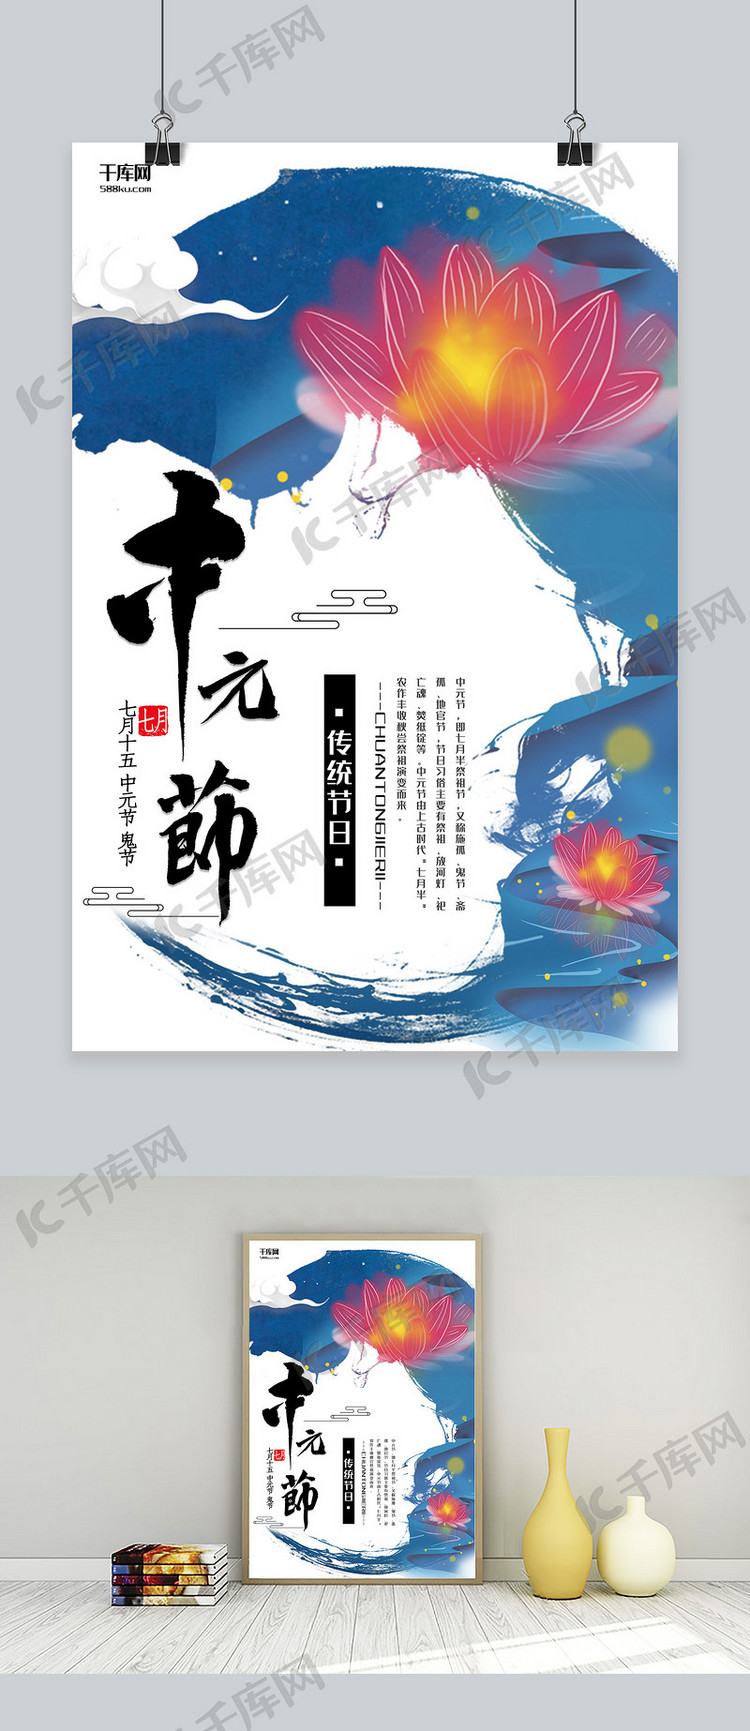 中元节蓝色祈福节日宣传海报